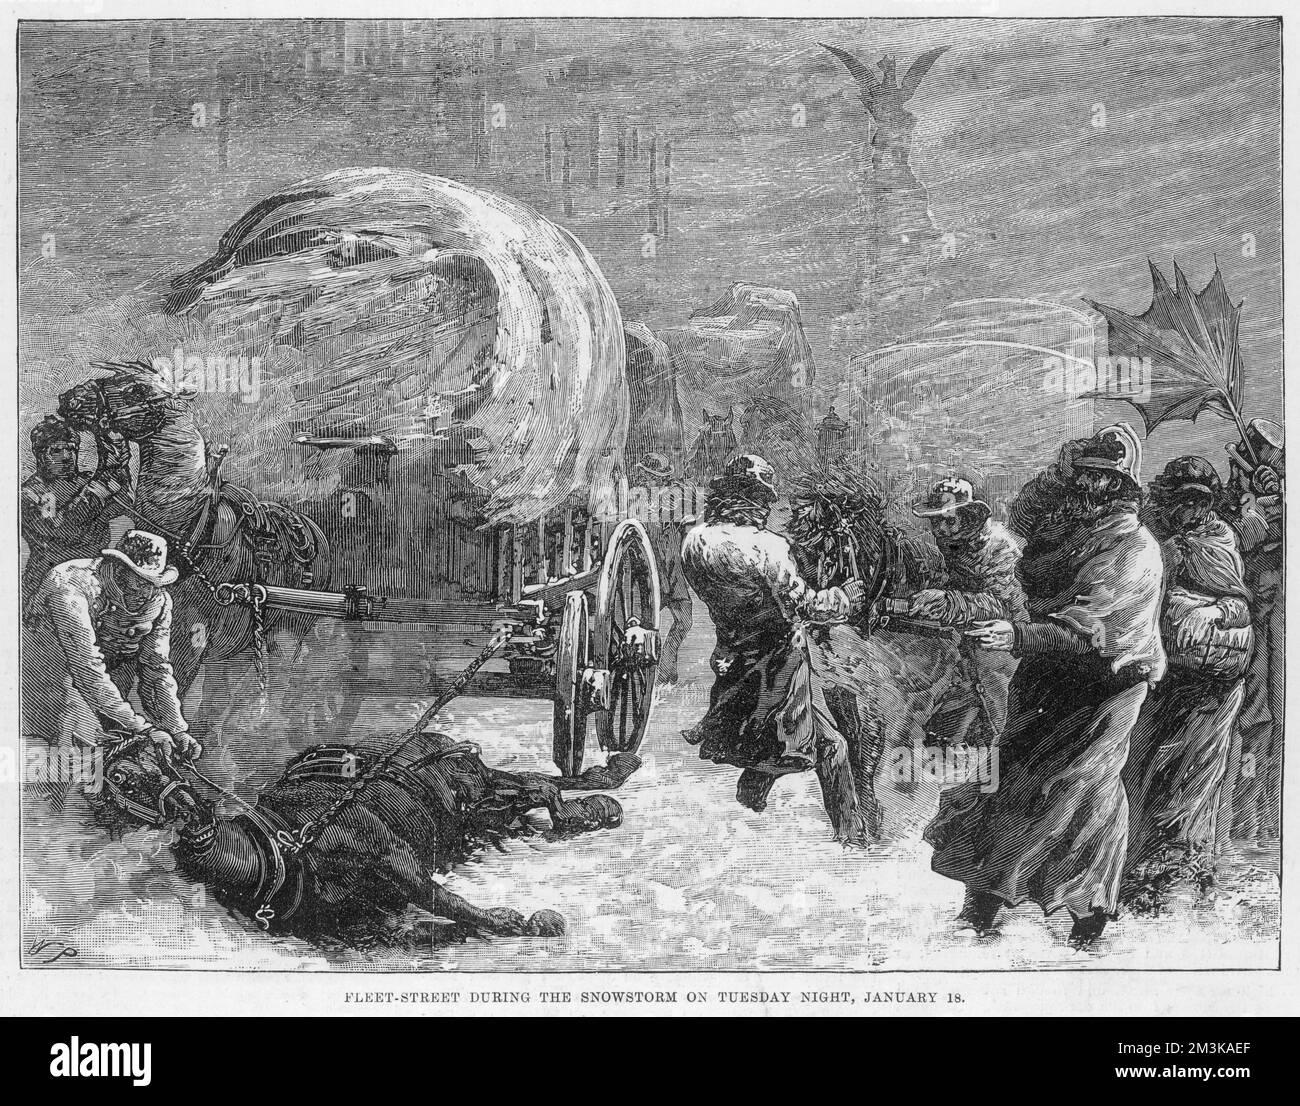 Fleet Street pendant la tempête de neige de mardi soir de 18 janvier 1881 montrant des chevaux et des autocars piégés dans la neige. Date : janvier 1881 Banque D'Images